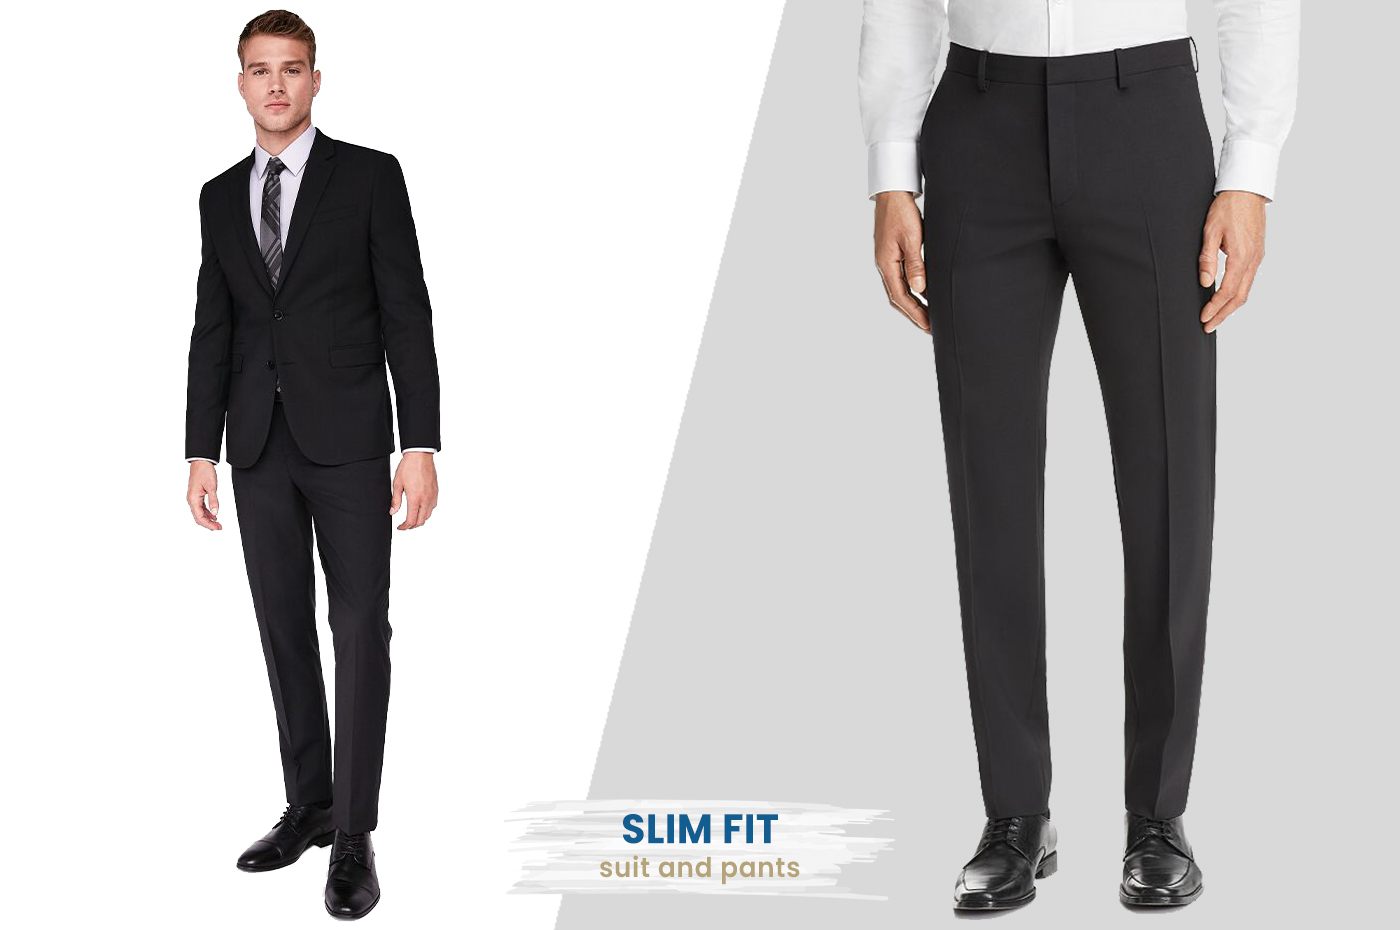 slim fit dress pants with suit